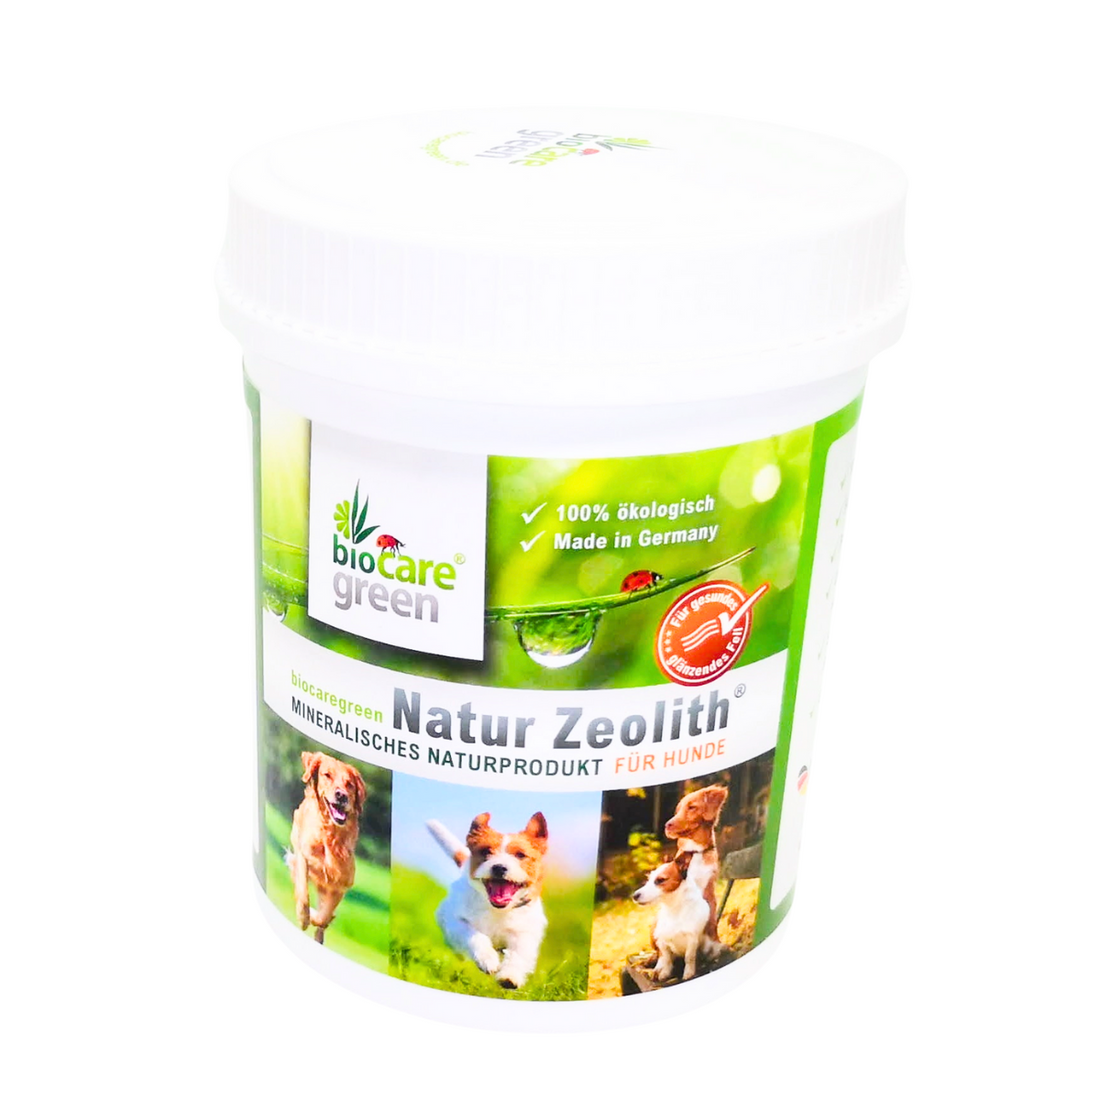 Natur Zeolith für Hunde 500g biocaregreen 100% ökologisch Für gesundes, glänzendes Fell Frei von Zusätzen Unterstützt die Bioverfügbarkeit von Nährstoffen Kornkammer Natur